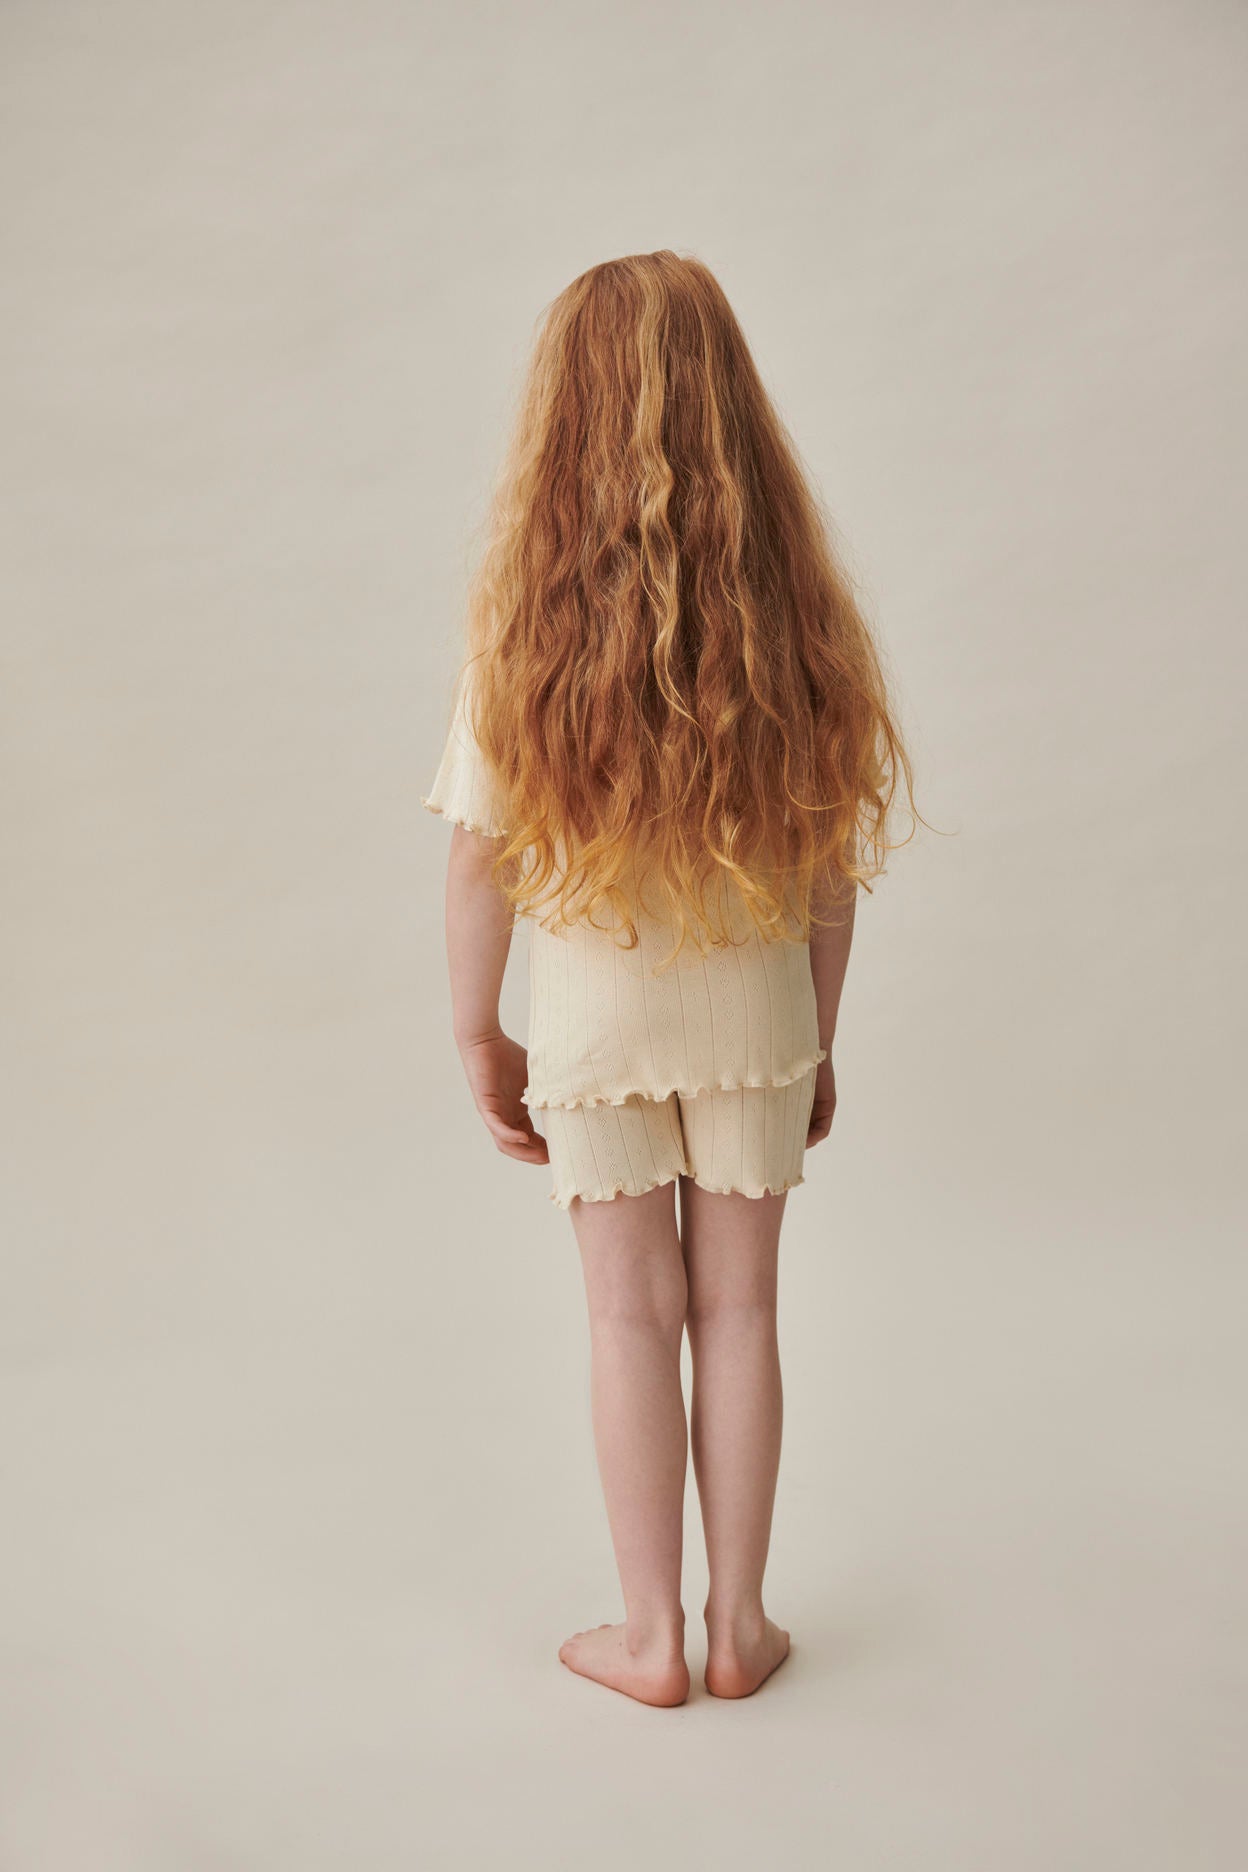 Skall Musling - Edie shorts Musling - Light beige